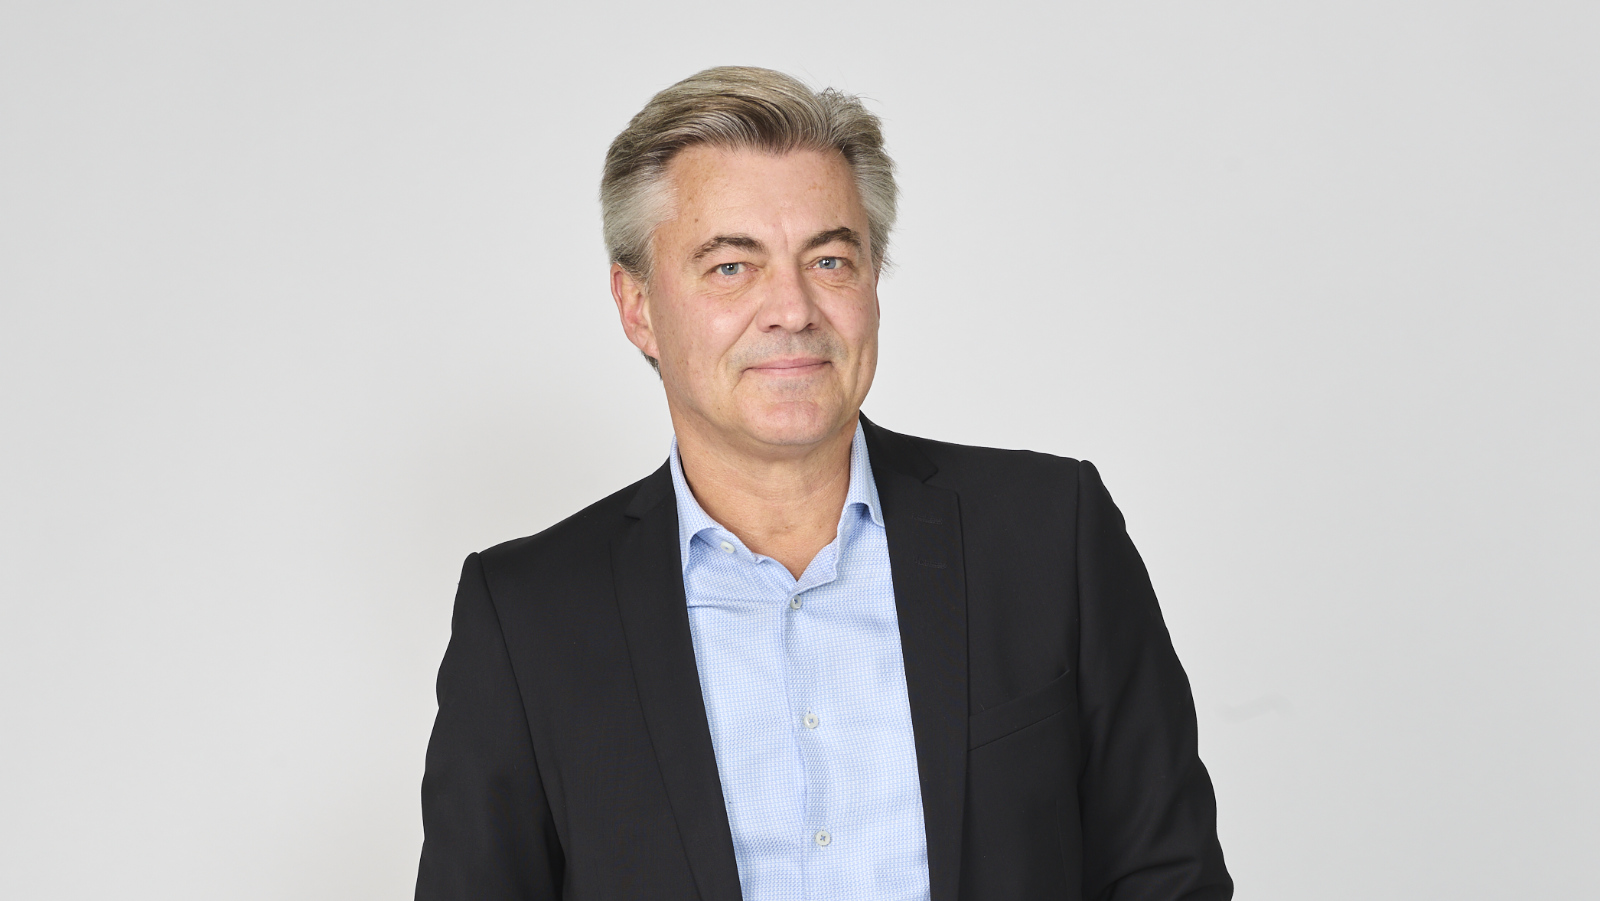 Henrik Höjsgaard, Maning Partner Nordici Interim. Denmark